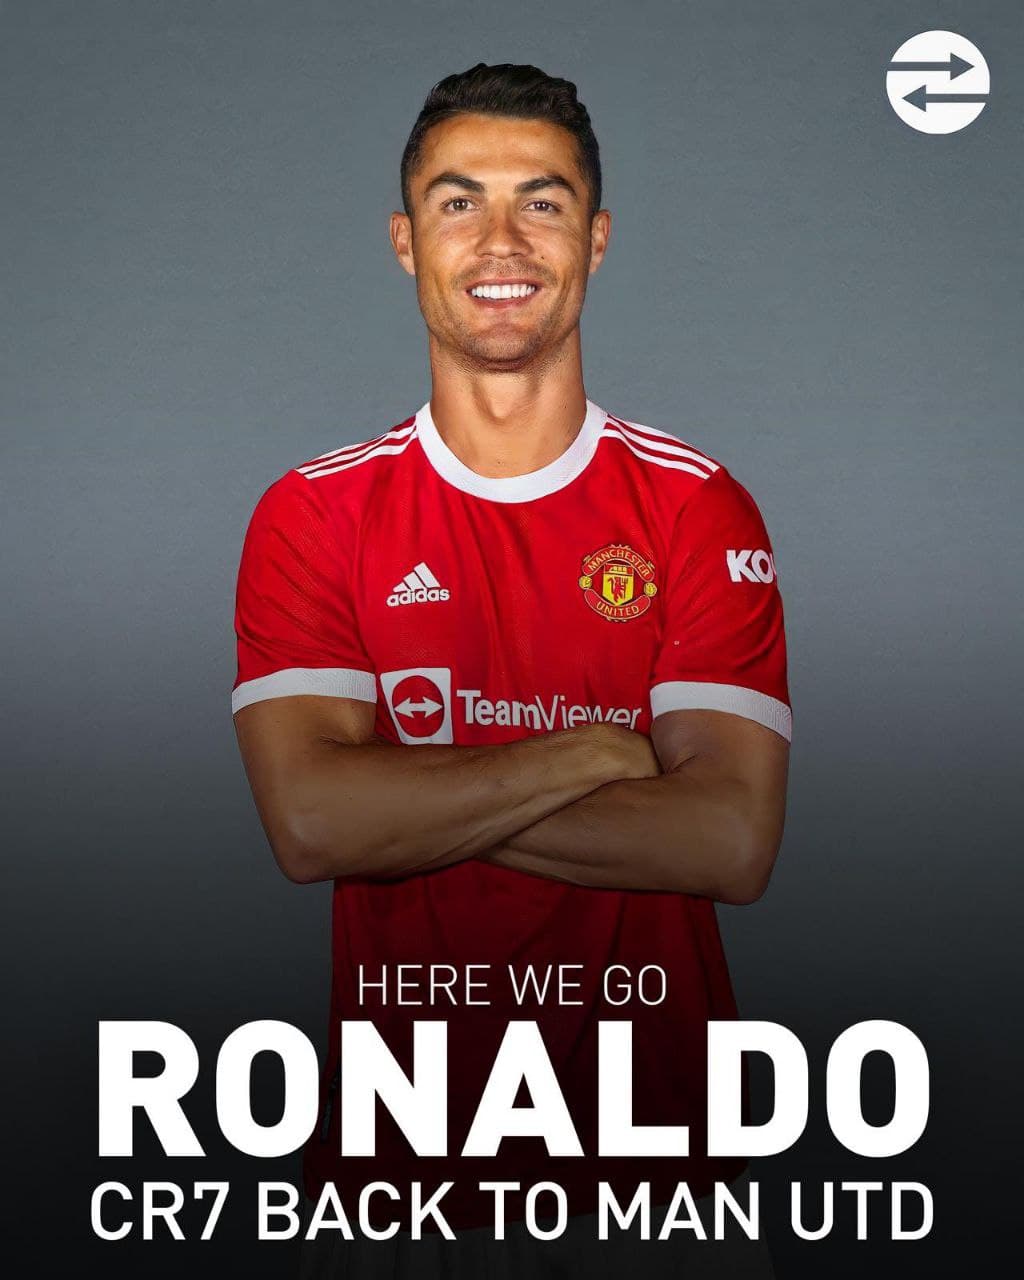 Ronaldo back to Manchester United